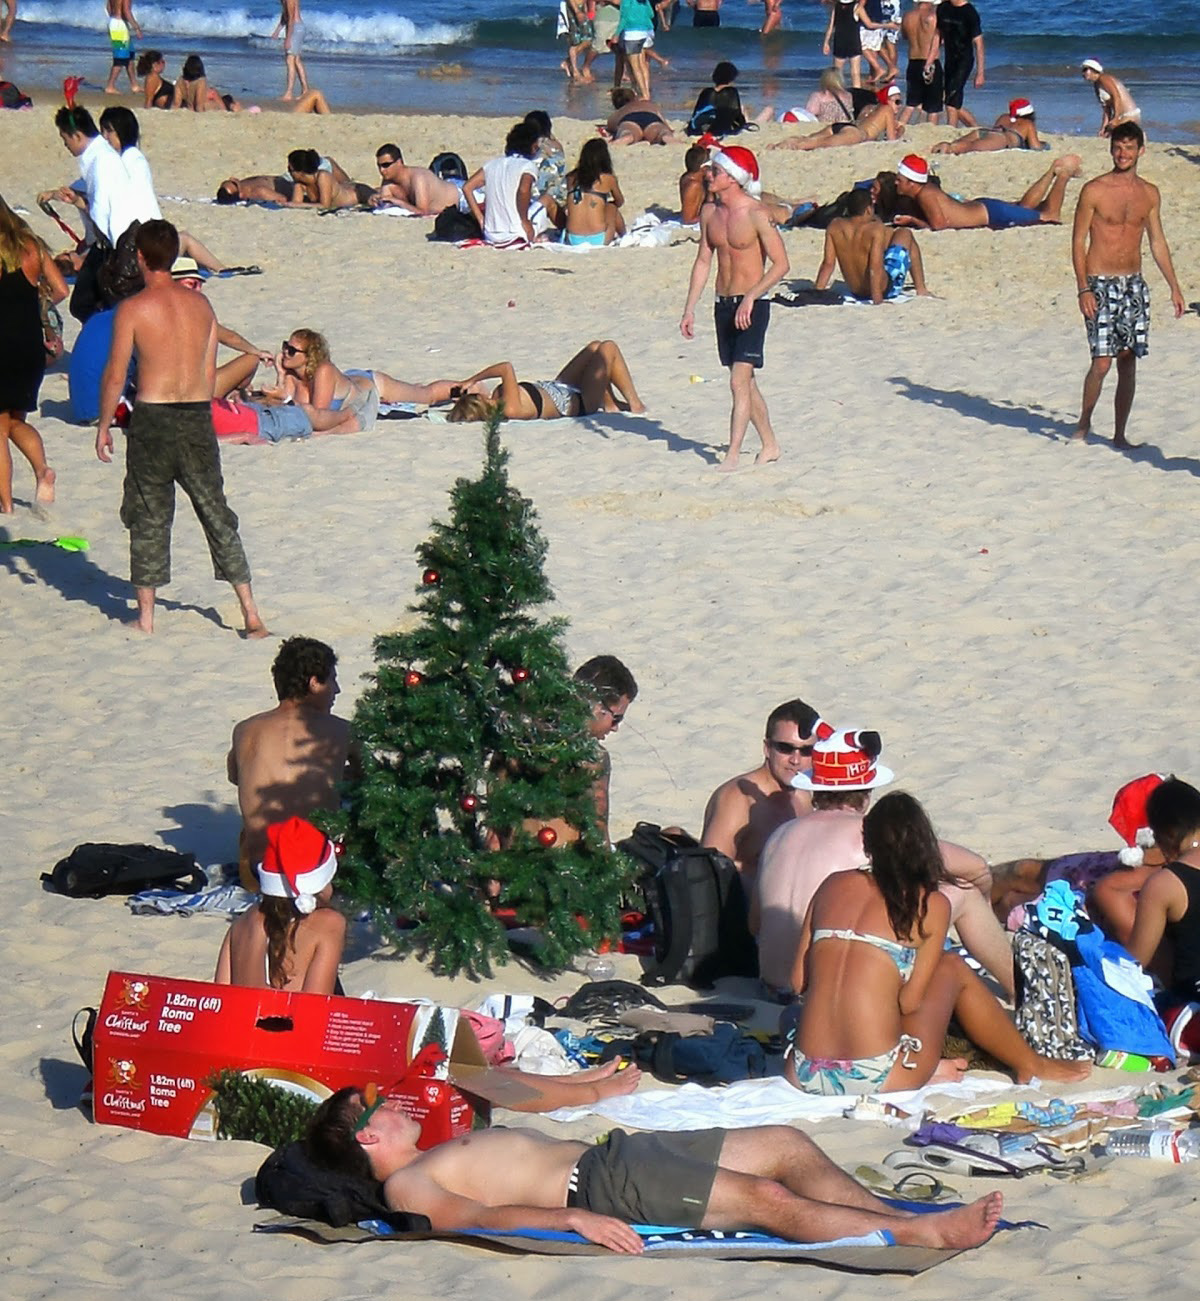 Natale Quando Si Festeggia.Natale In Australia Come Si Festeggia Dall Altra Parte Del Mondo